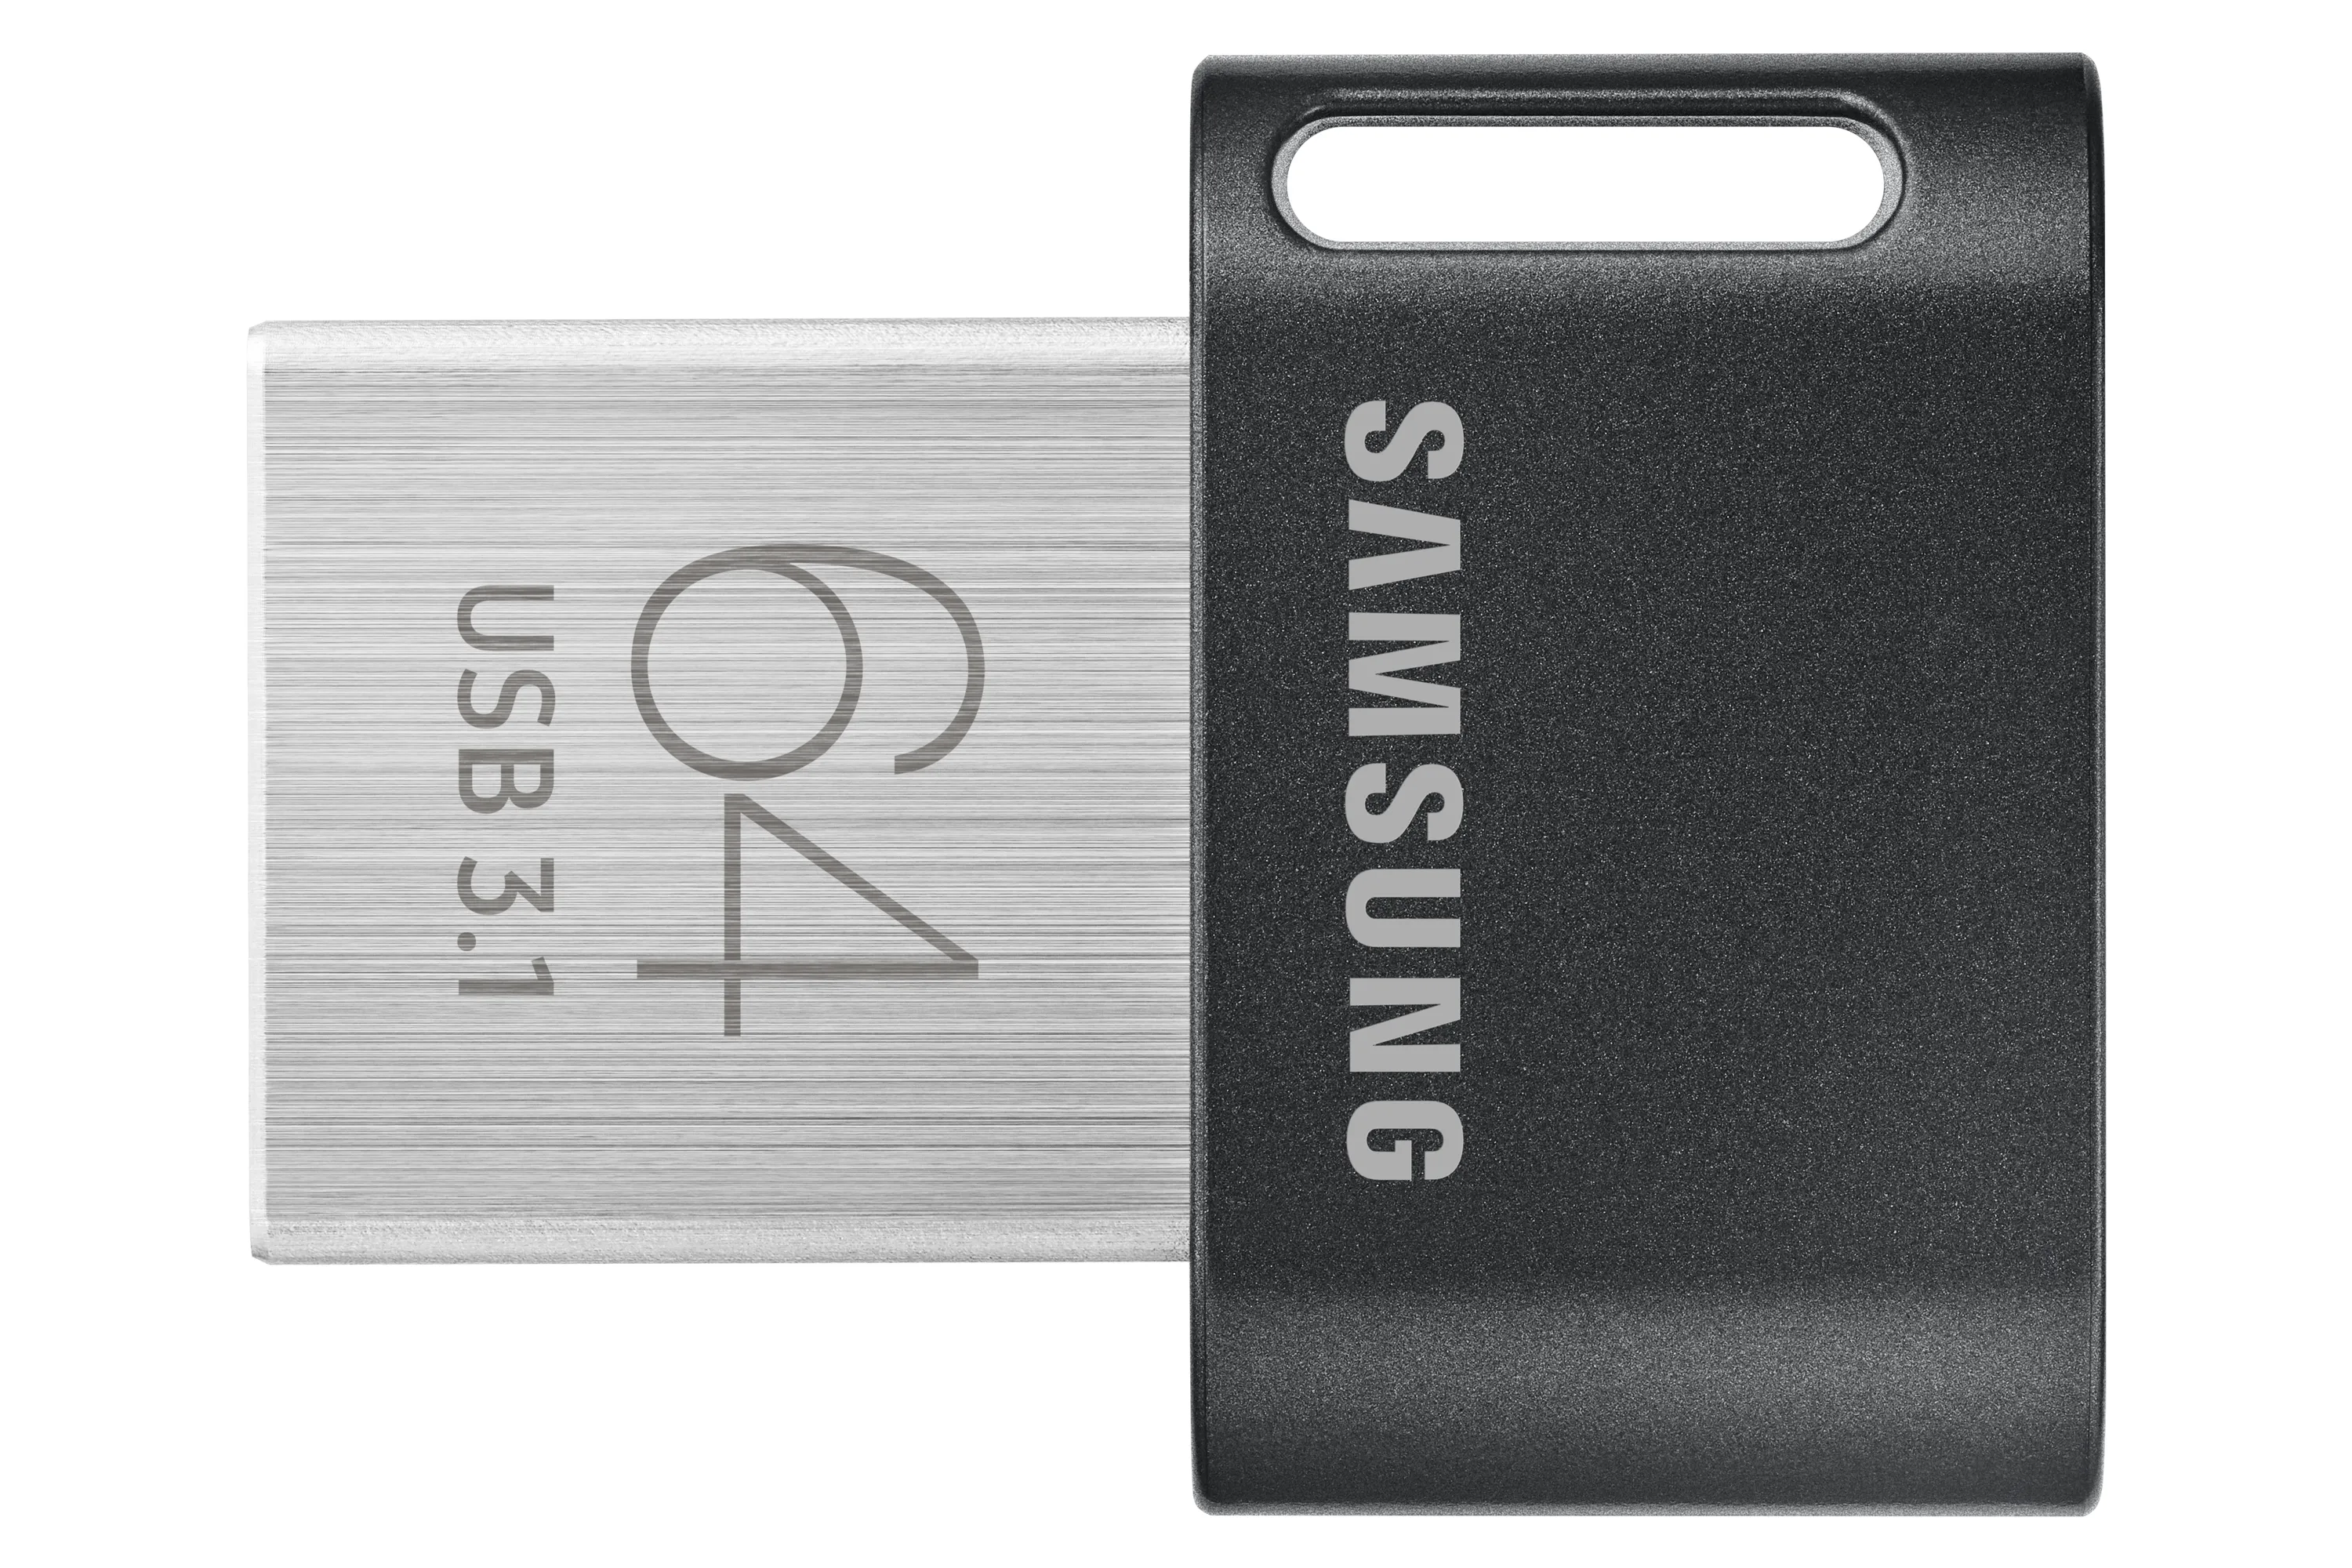 Vente SAMSUNG FIT PLUS 64Go USB 3.1 Samsung au meilleur prix - visuel 8